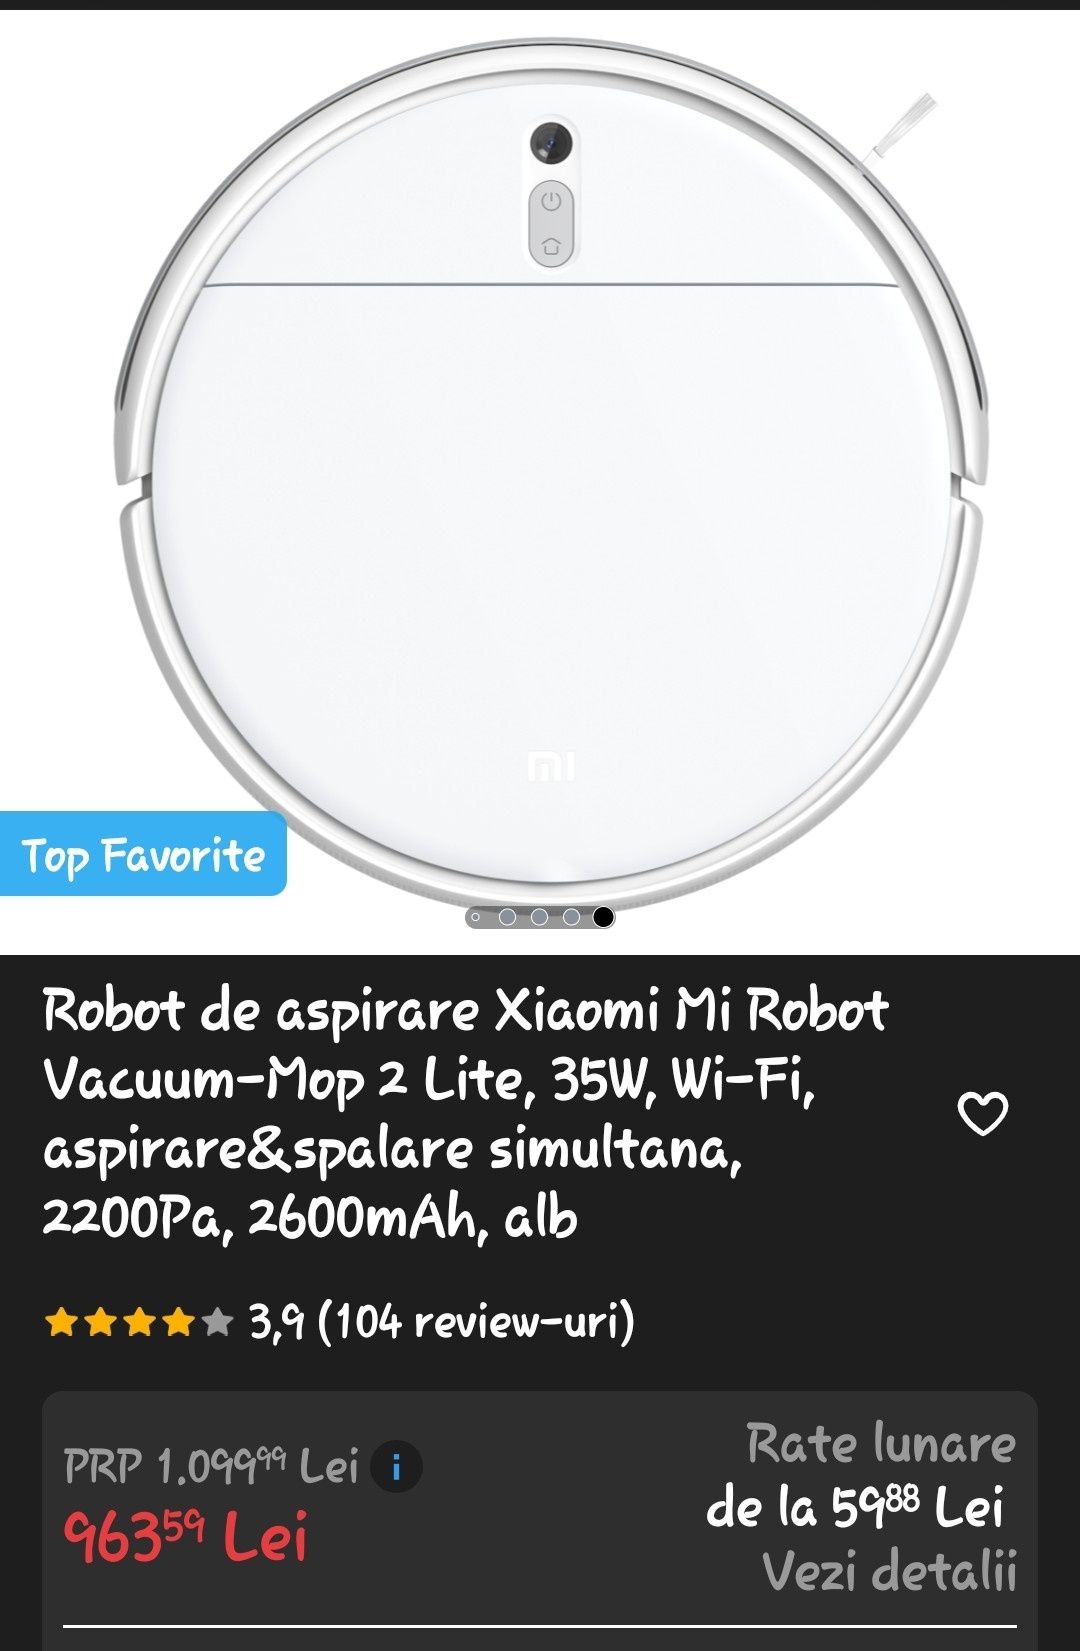 Robot de aspirare Xiaomi Mi Robot Vacuum-Mop 2 Lite